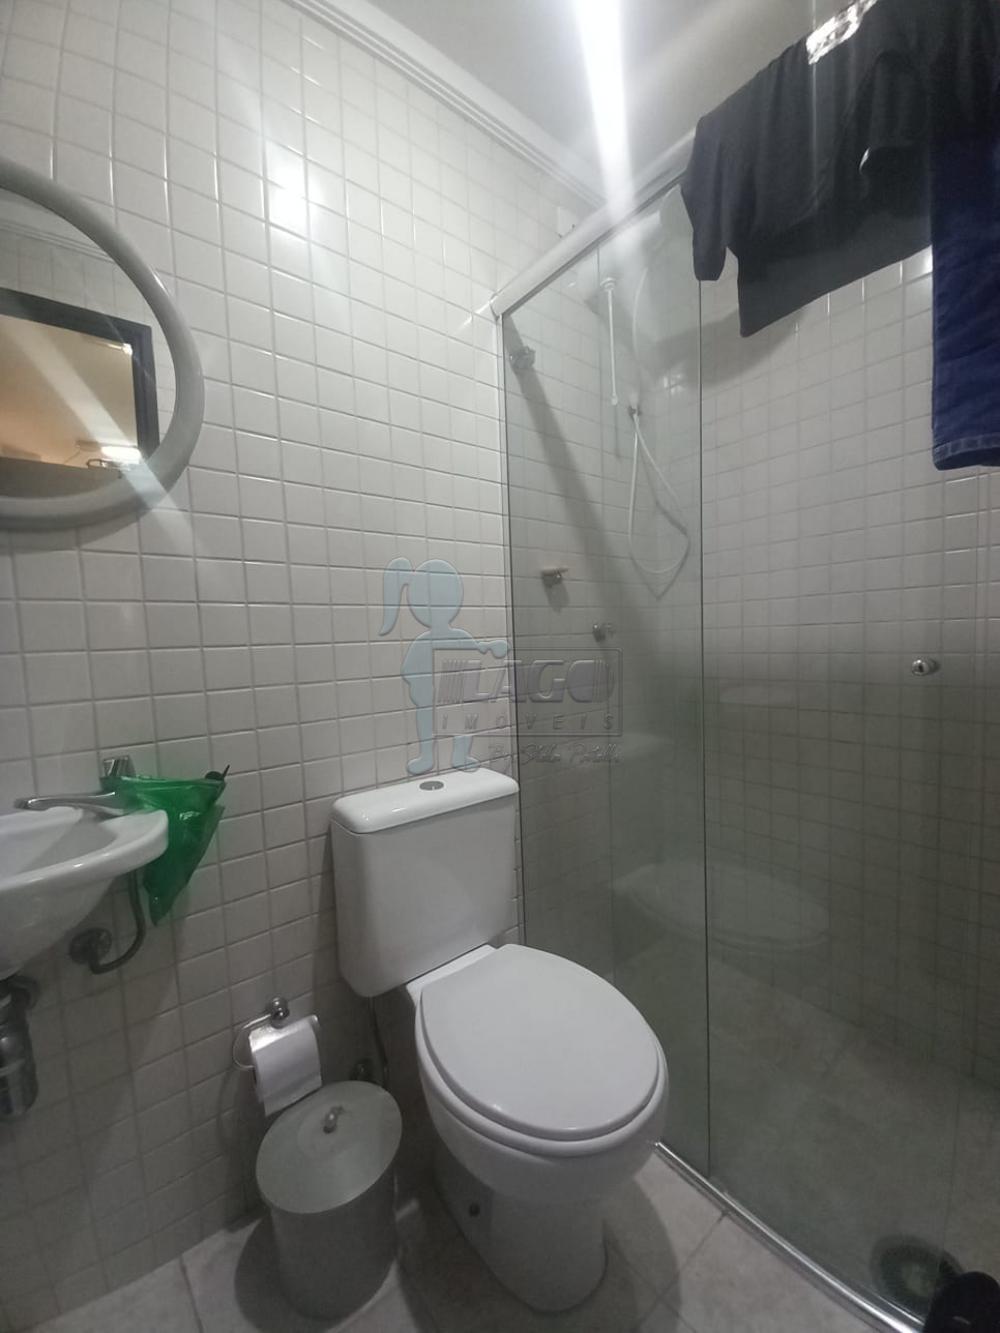 Comprar Apartamentos / Padrão em Ribeirão Preto R$ 900.000,00 - Foto 11